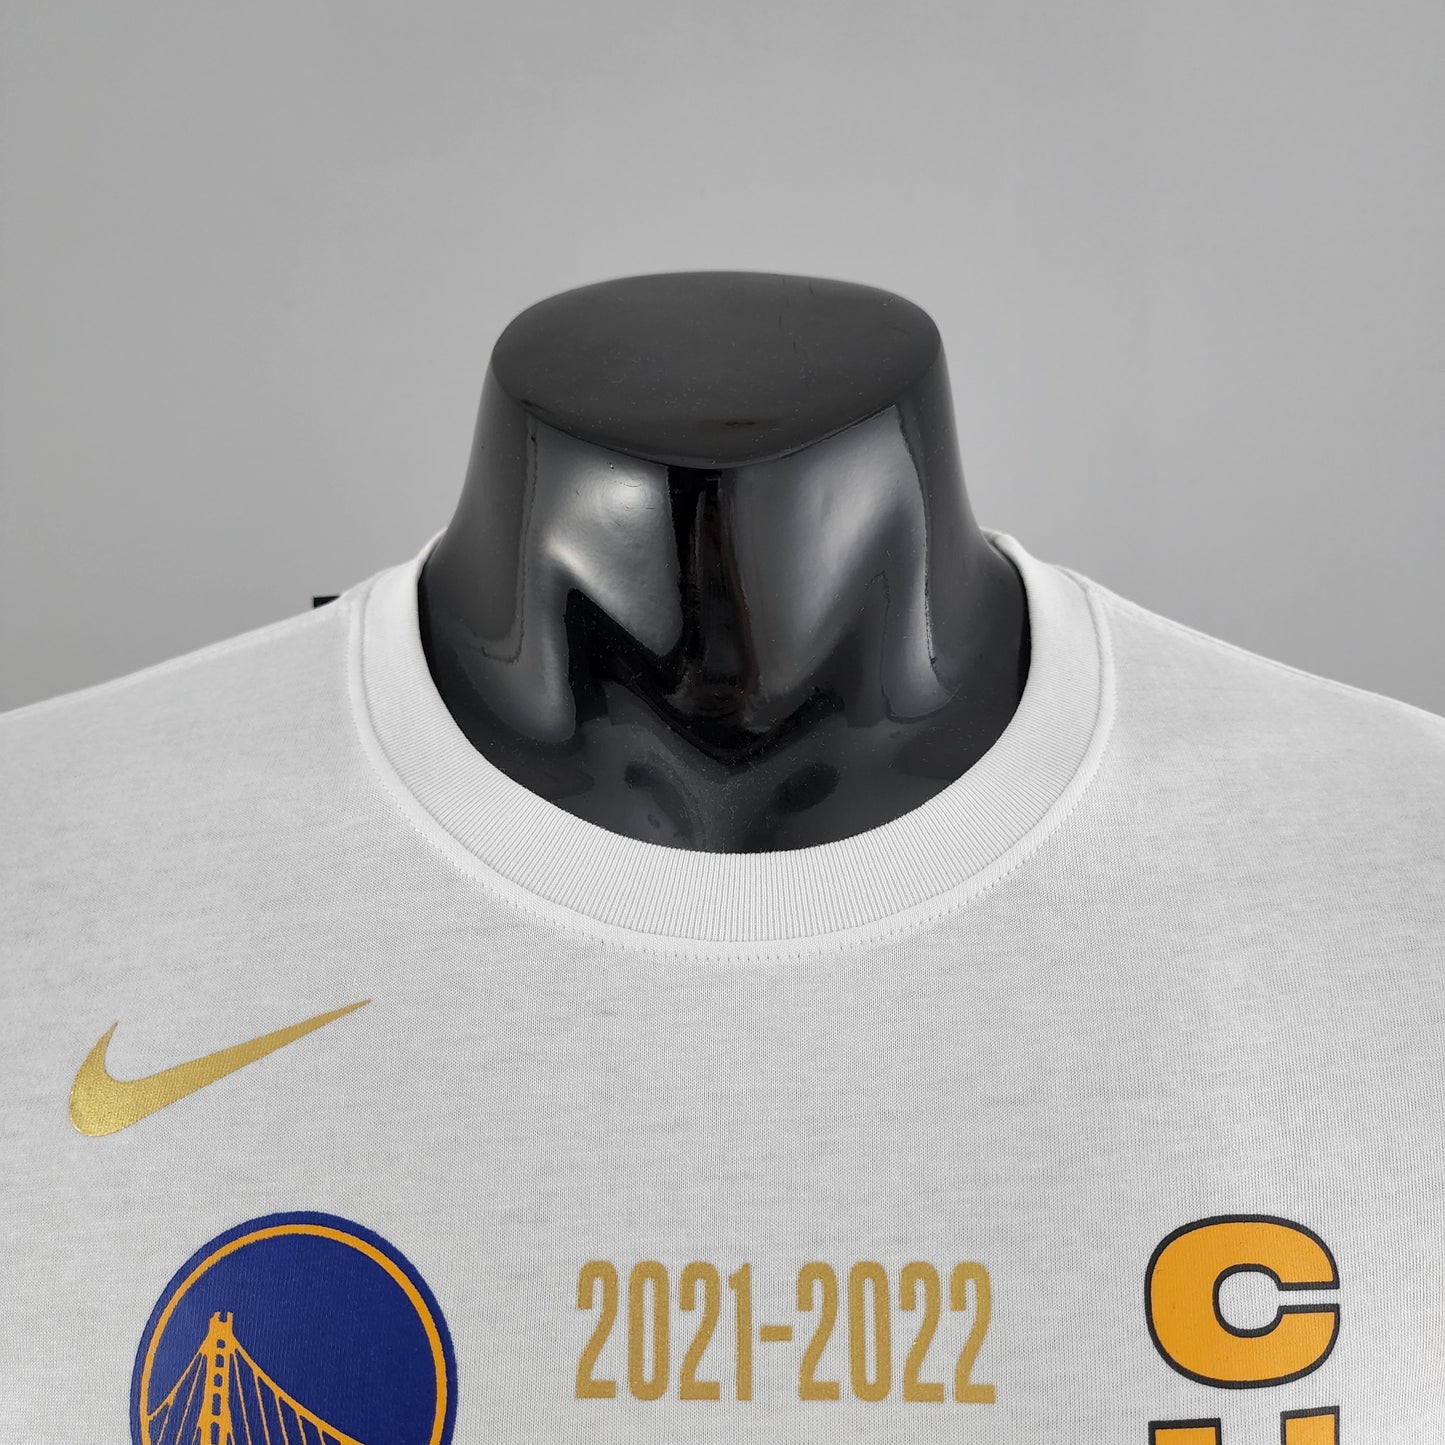 Men's Nike  Golden State Warriors 2022 NBA Finals Champions Locker Room T-Shirt